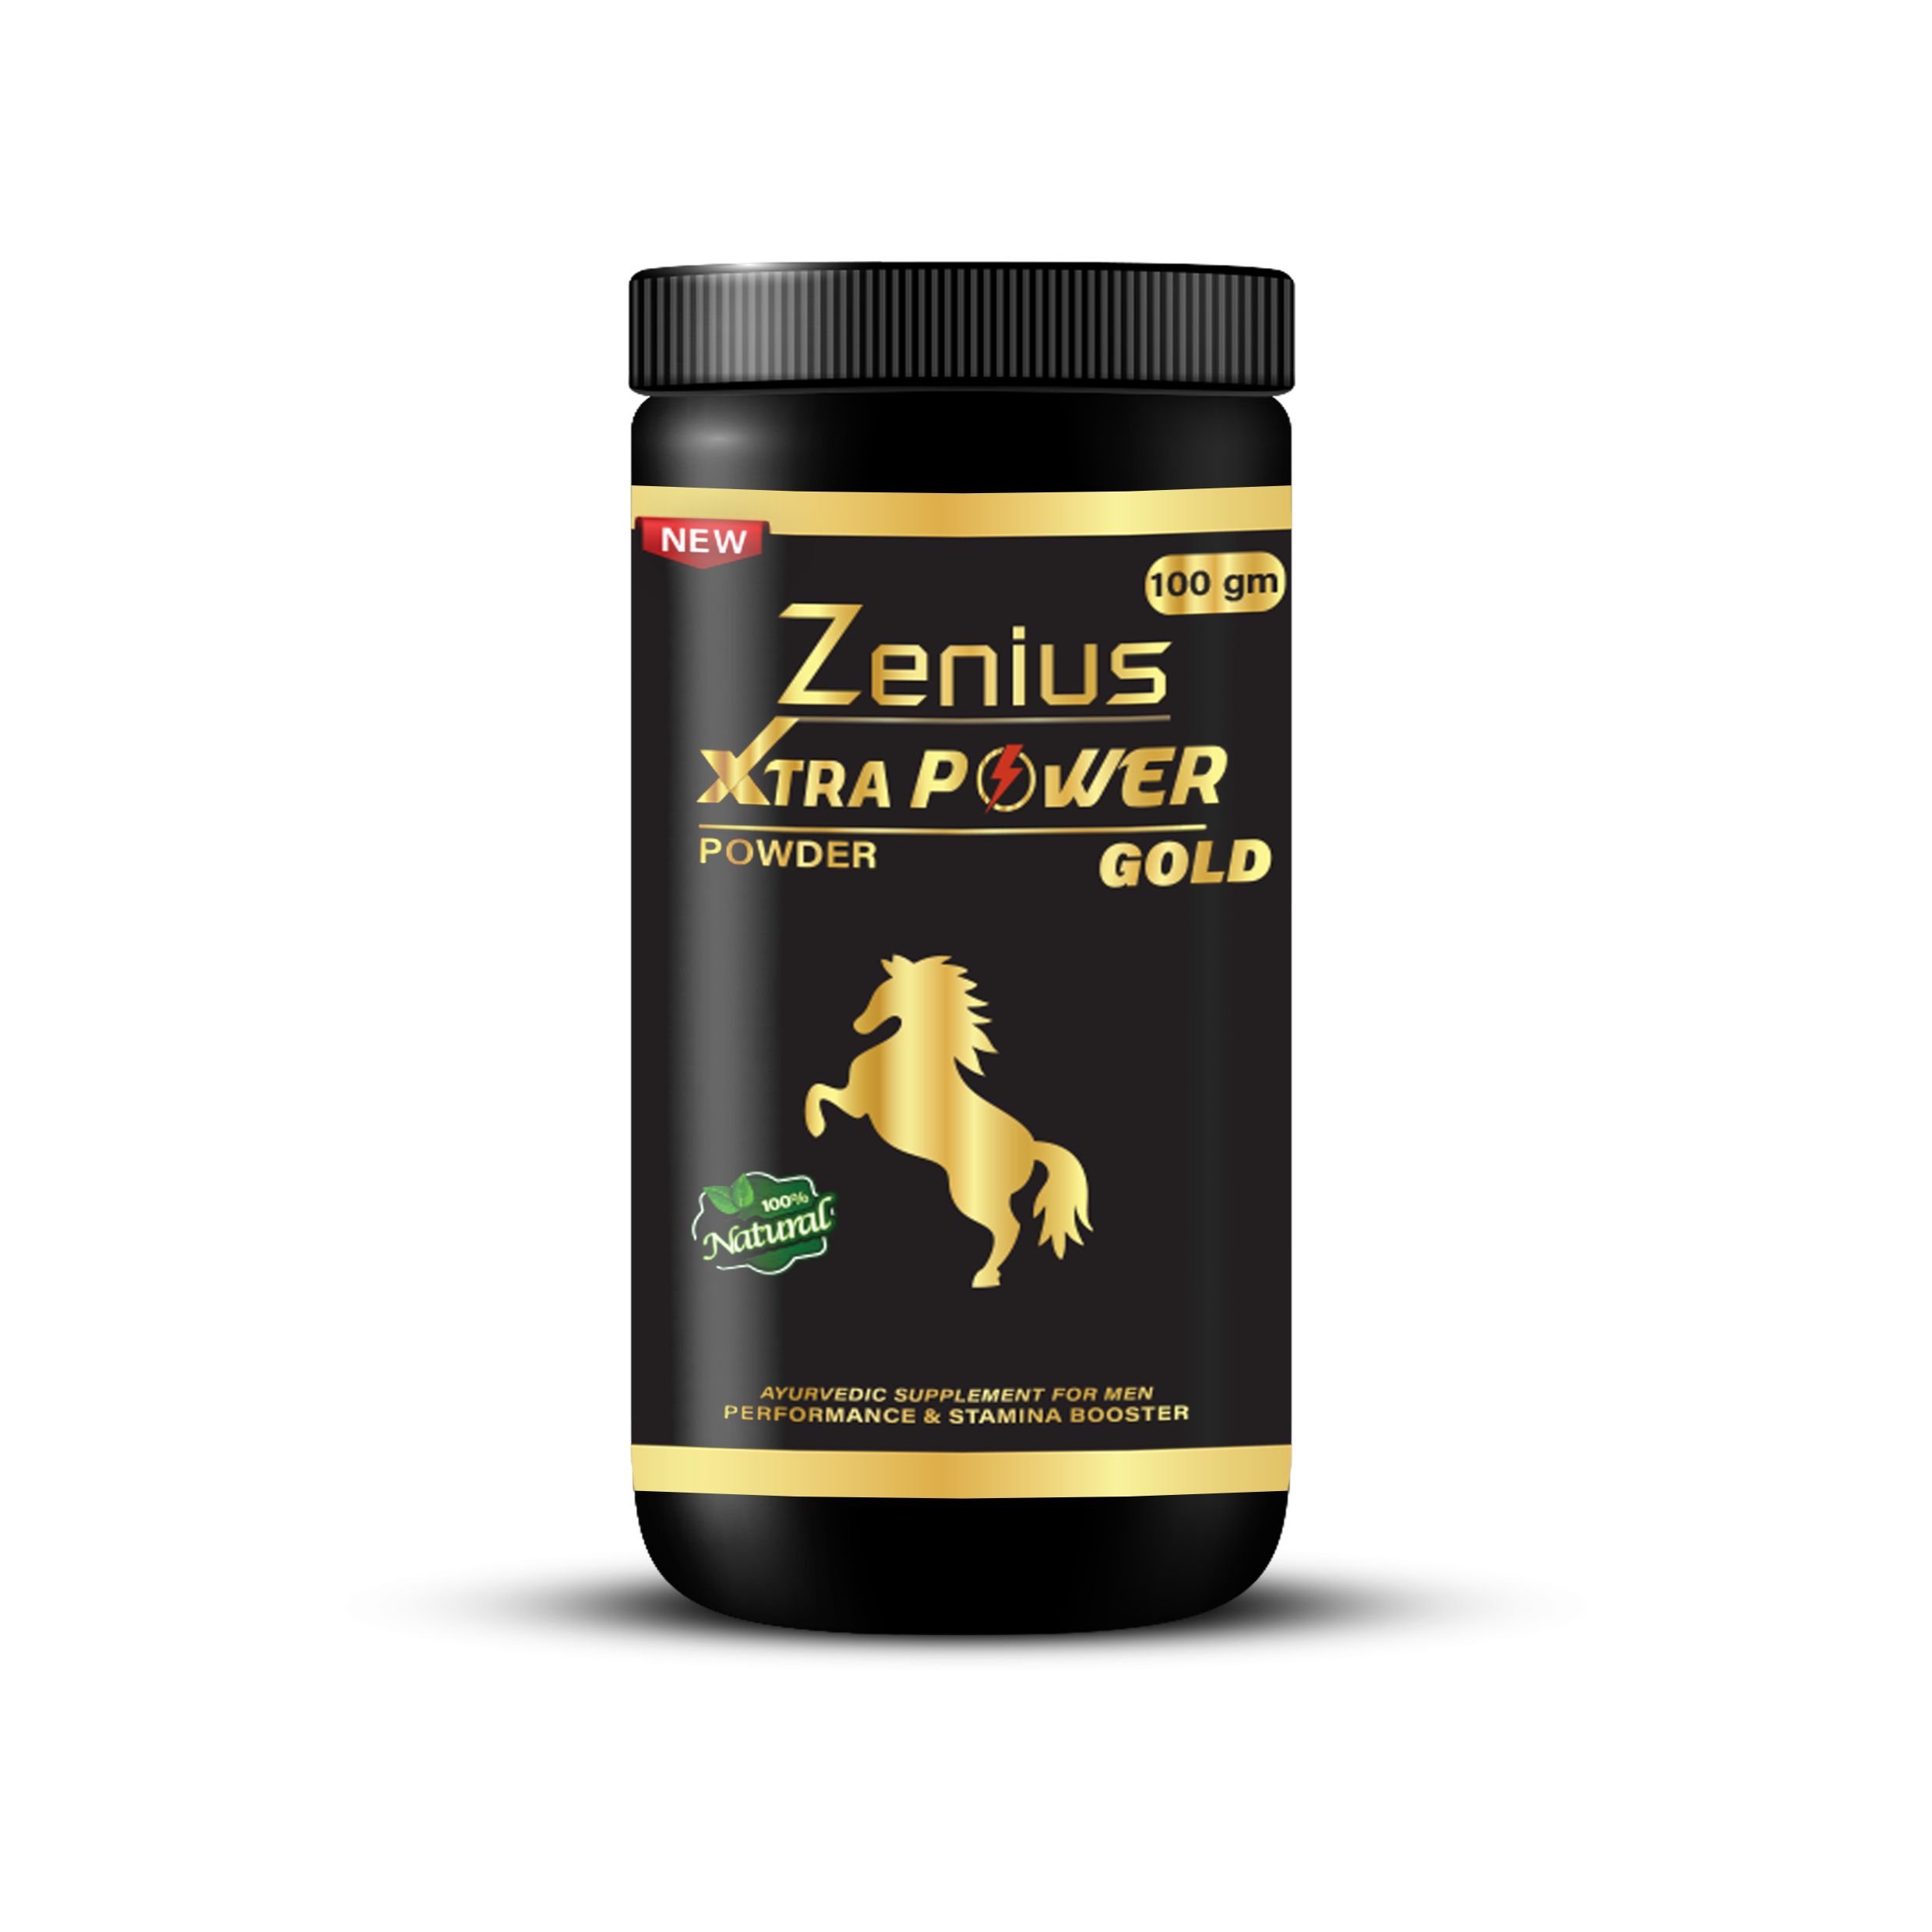 Buy Zenius Xtar Power Gold Powder at Best Price Online